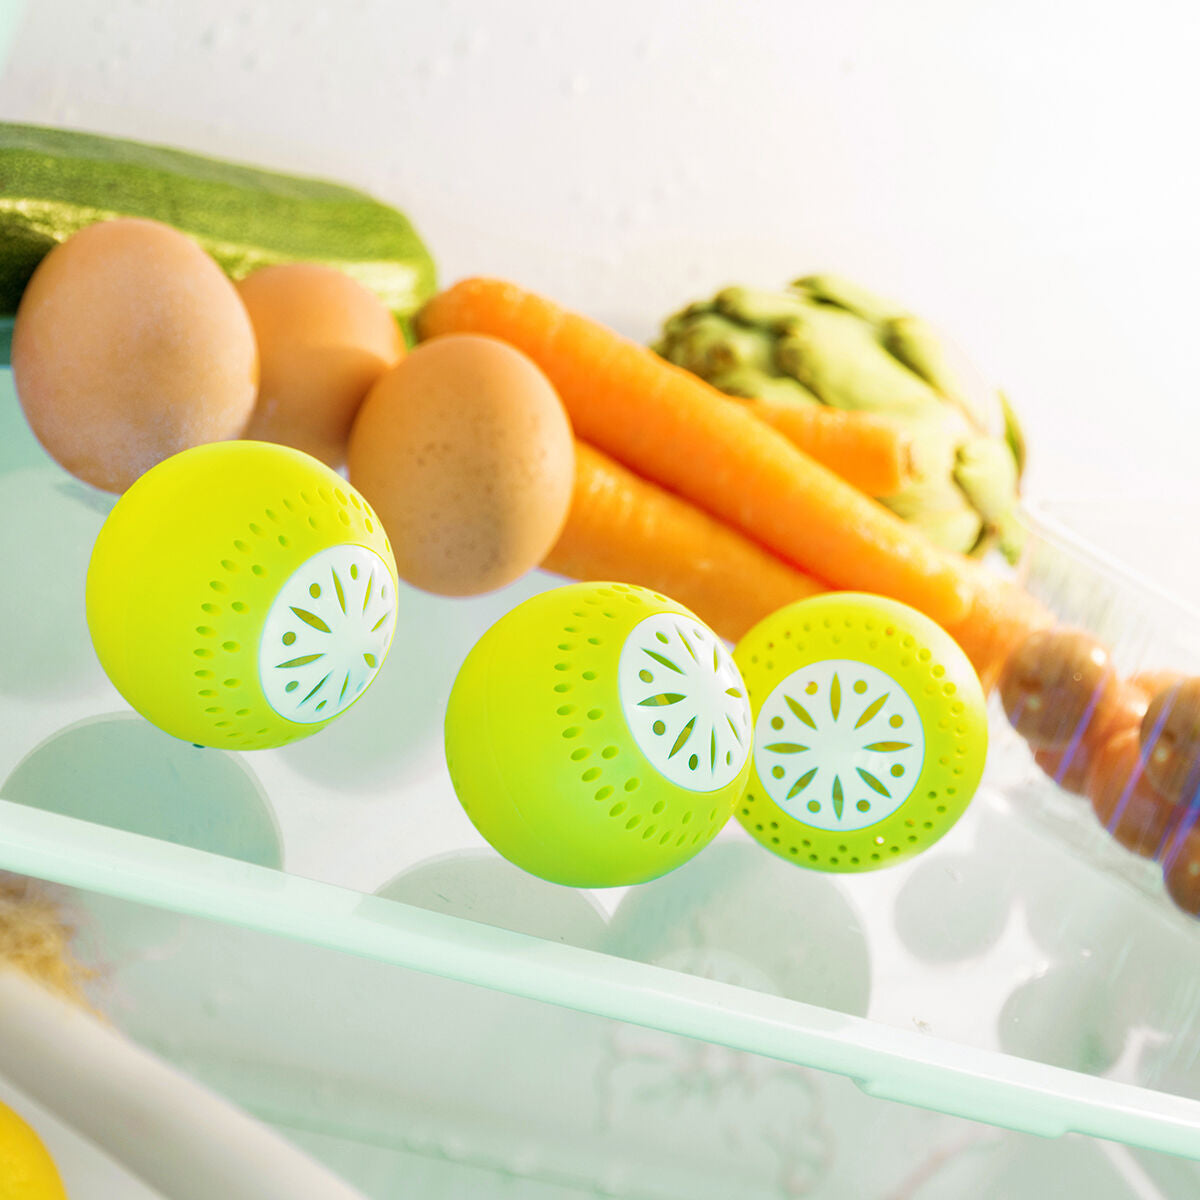 Eco fridge balls - 3 pieces